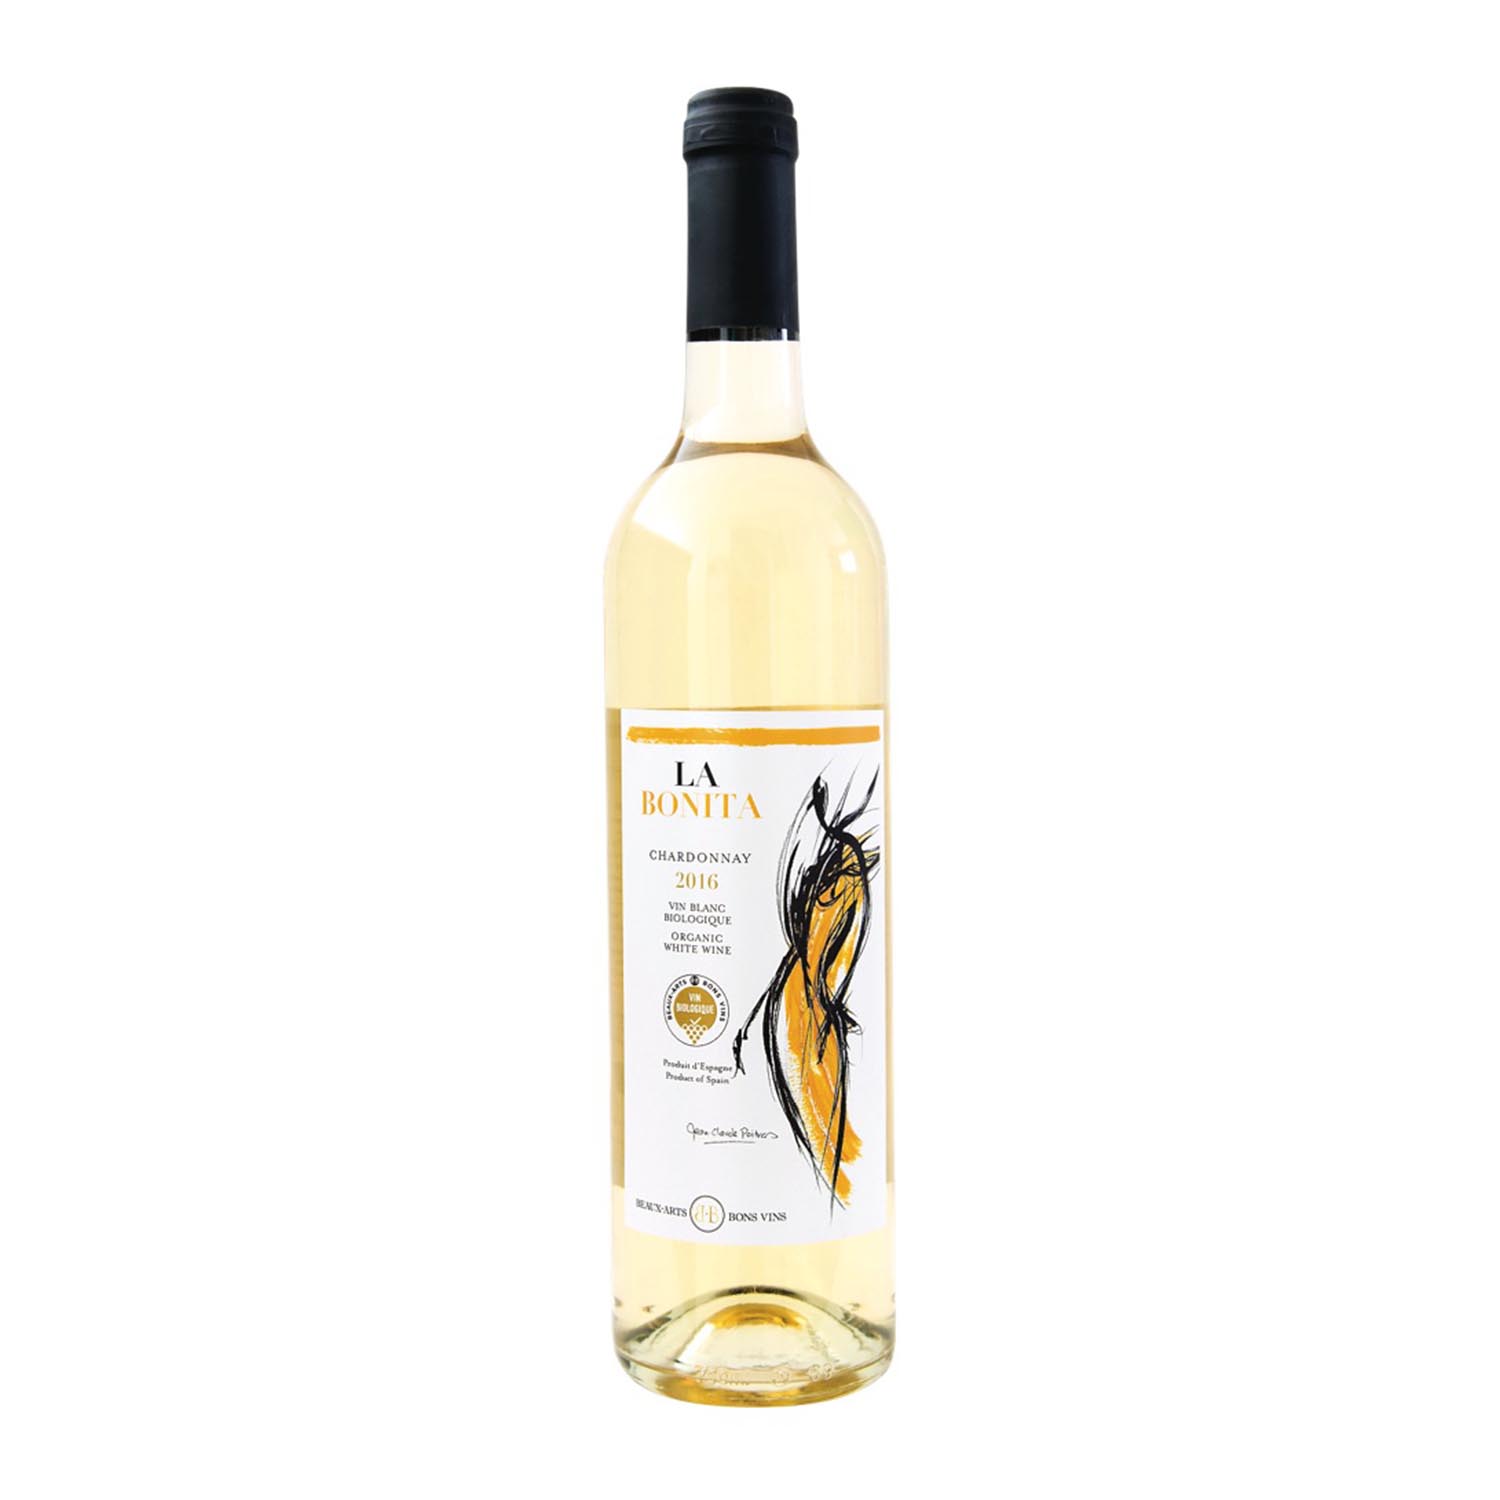 Vin blanc d'Espagne, Chardonnay (75 cl)  La Belle Vie : Courses en Ligne -  Livraison à Domicile